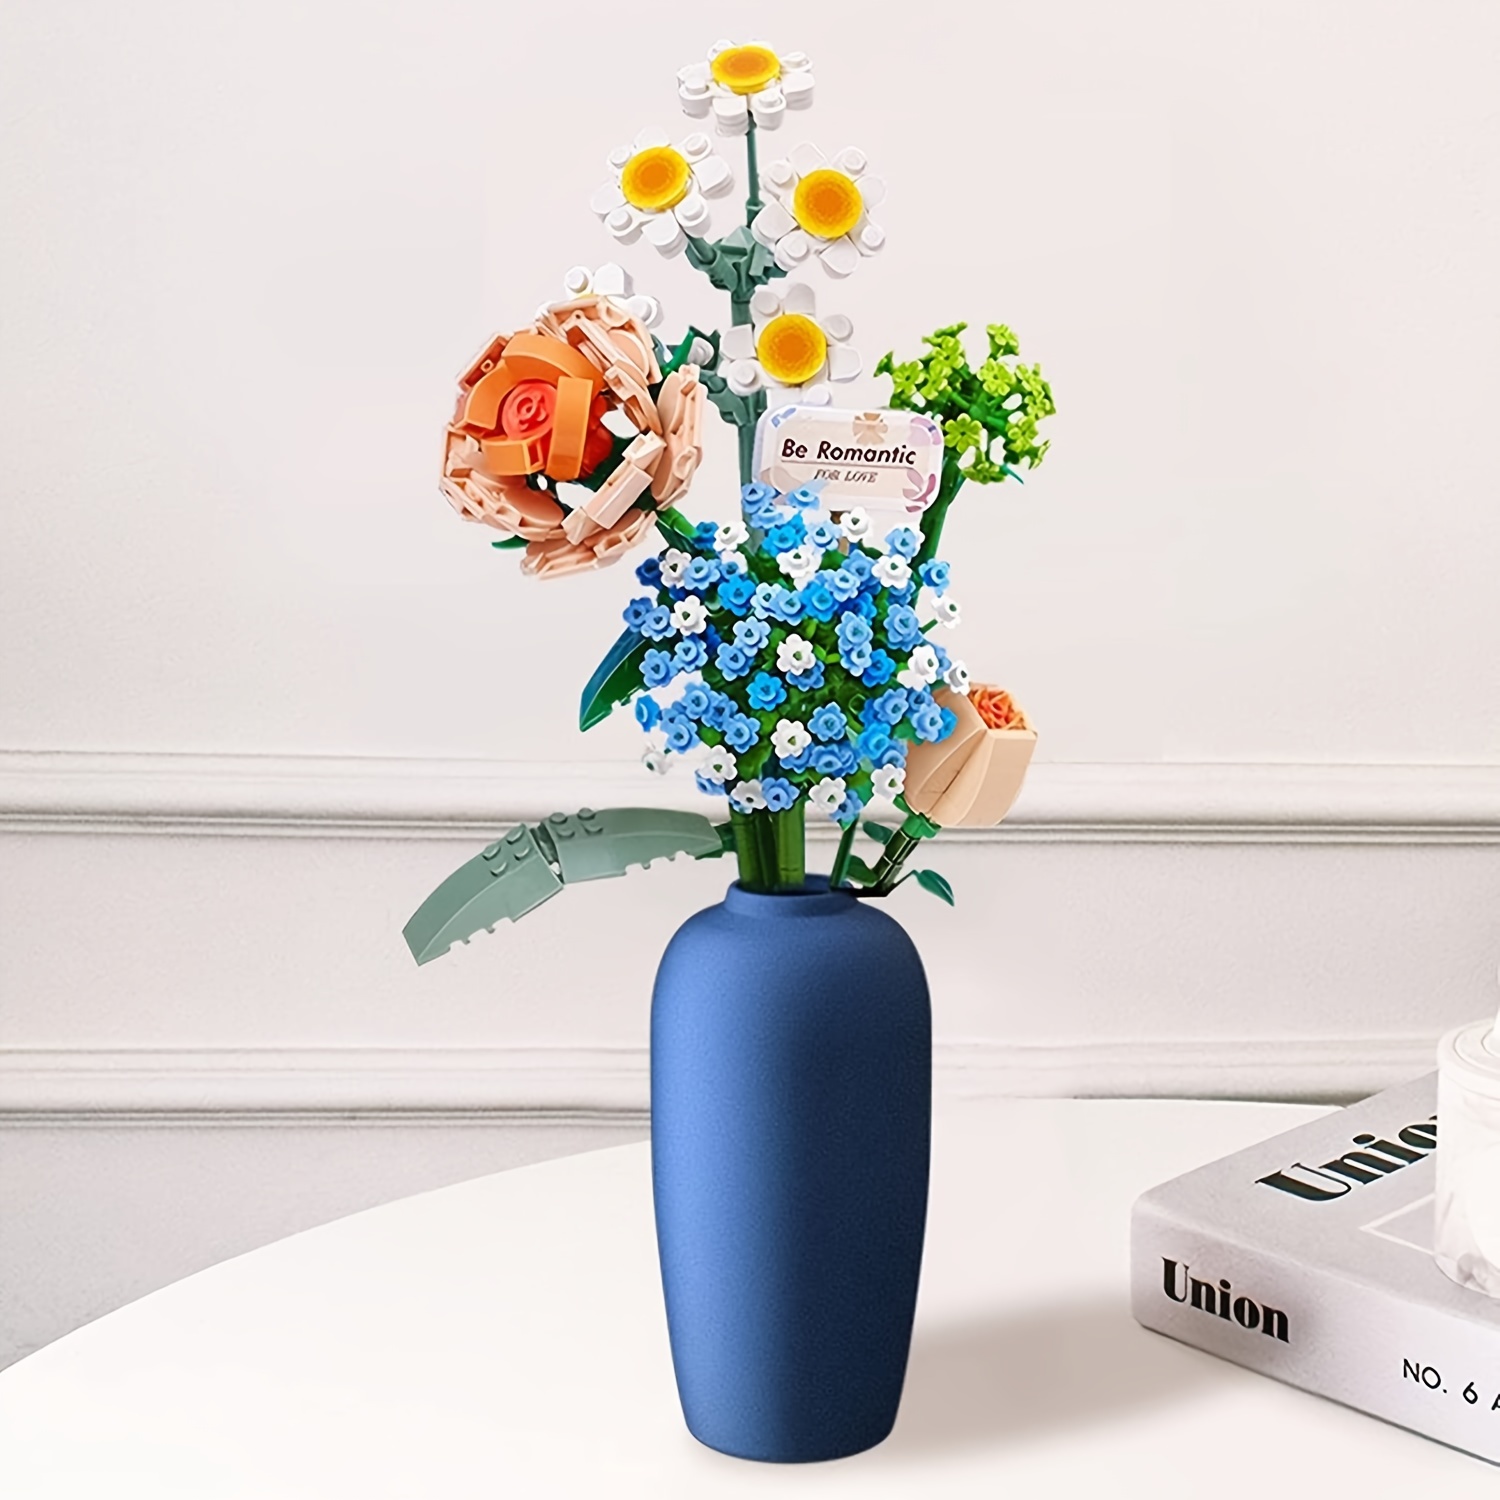 Lego Compatible Flower Vase original -  UK